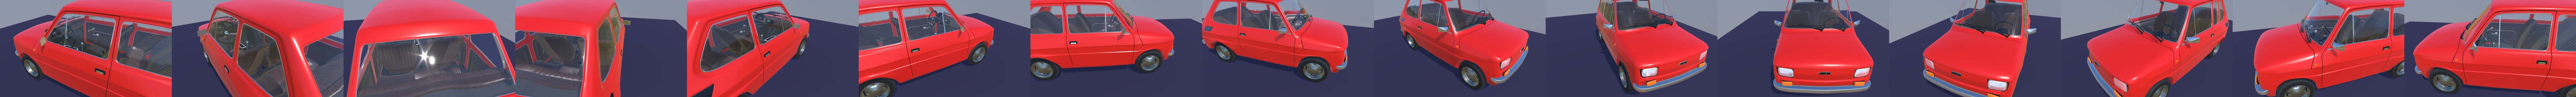 Fiat 126p, Maluch - 3D model by doubletwisted (@dominikbargiel97) [a17961c]